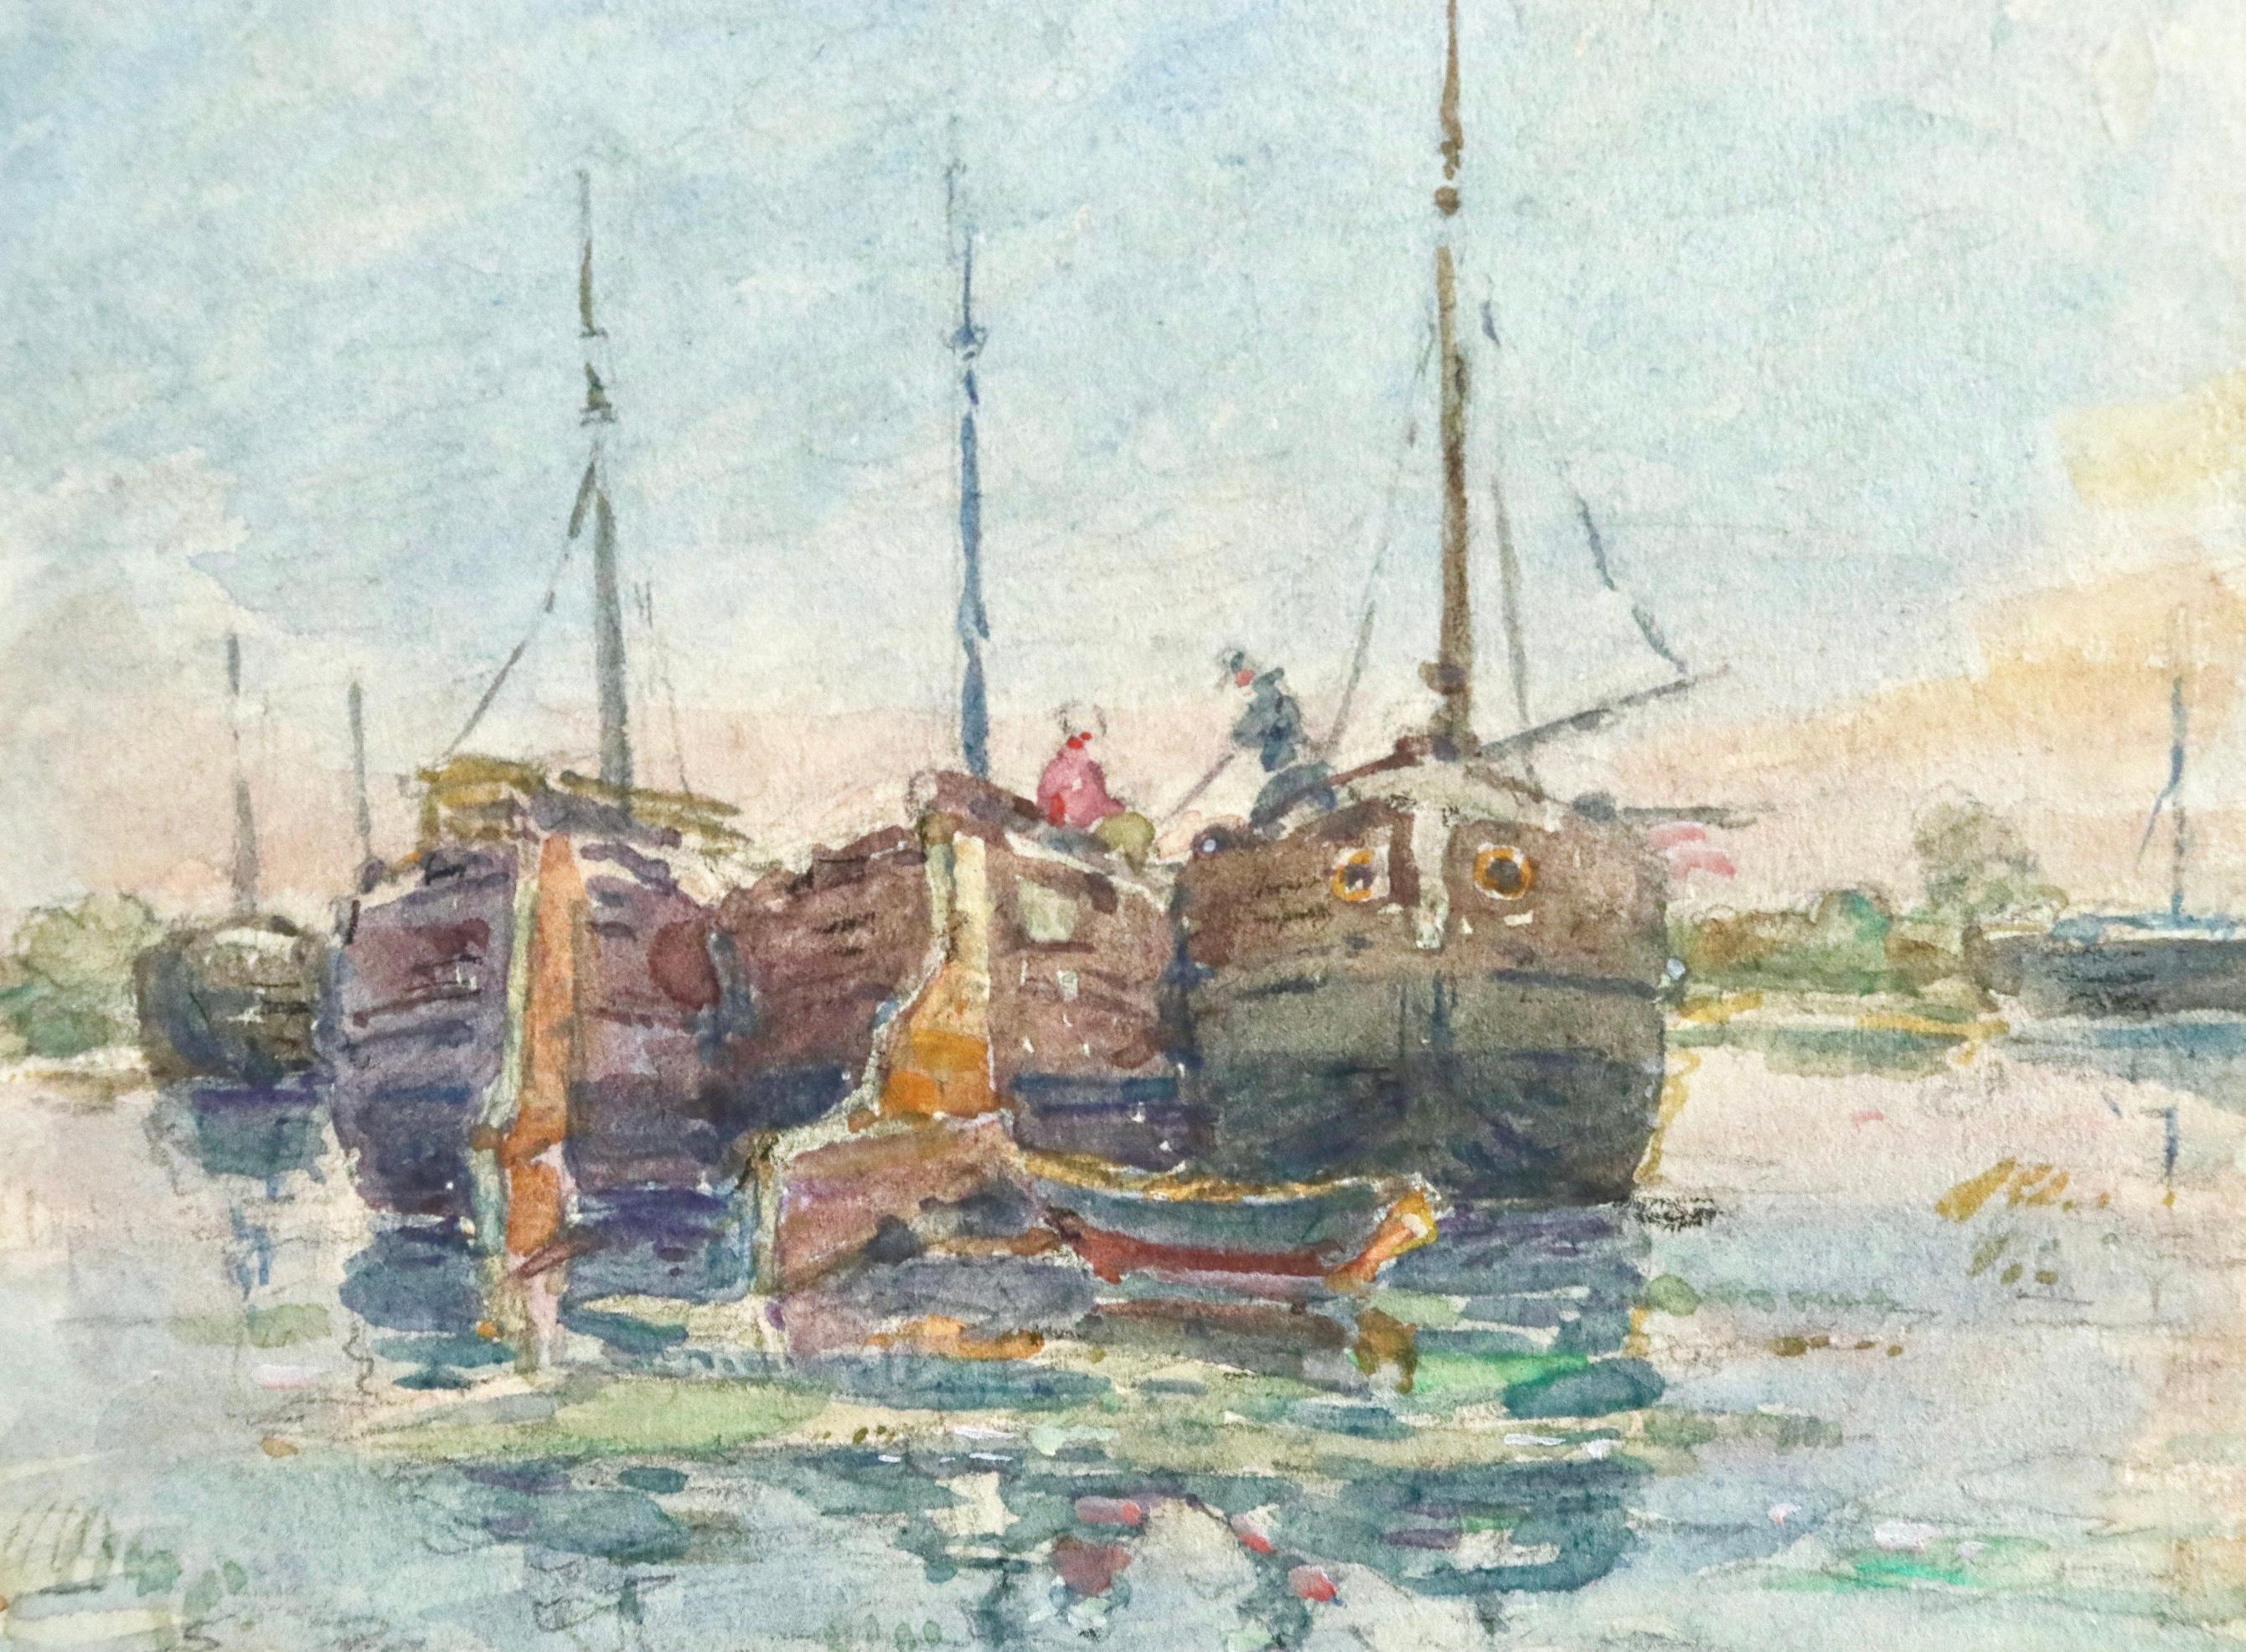 Sur les Bateaux - 19th Century Watercolor, Boats on River Landscape by H Duhem - Impressionist Painting by Henri Duhem